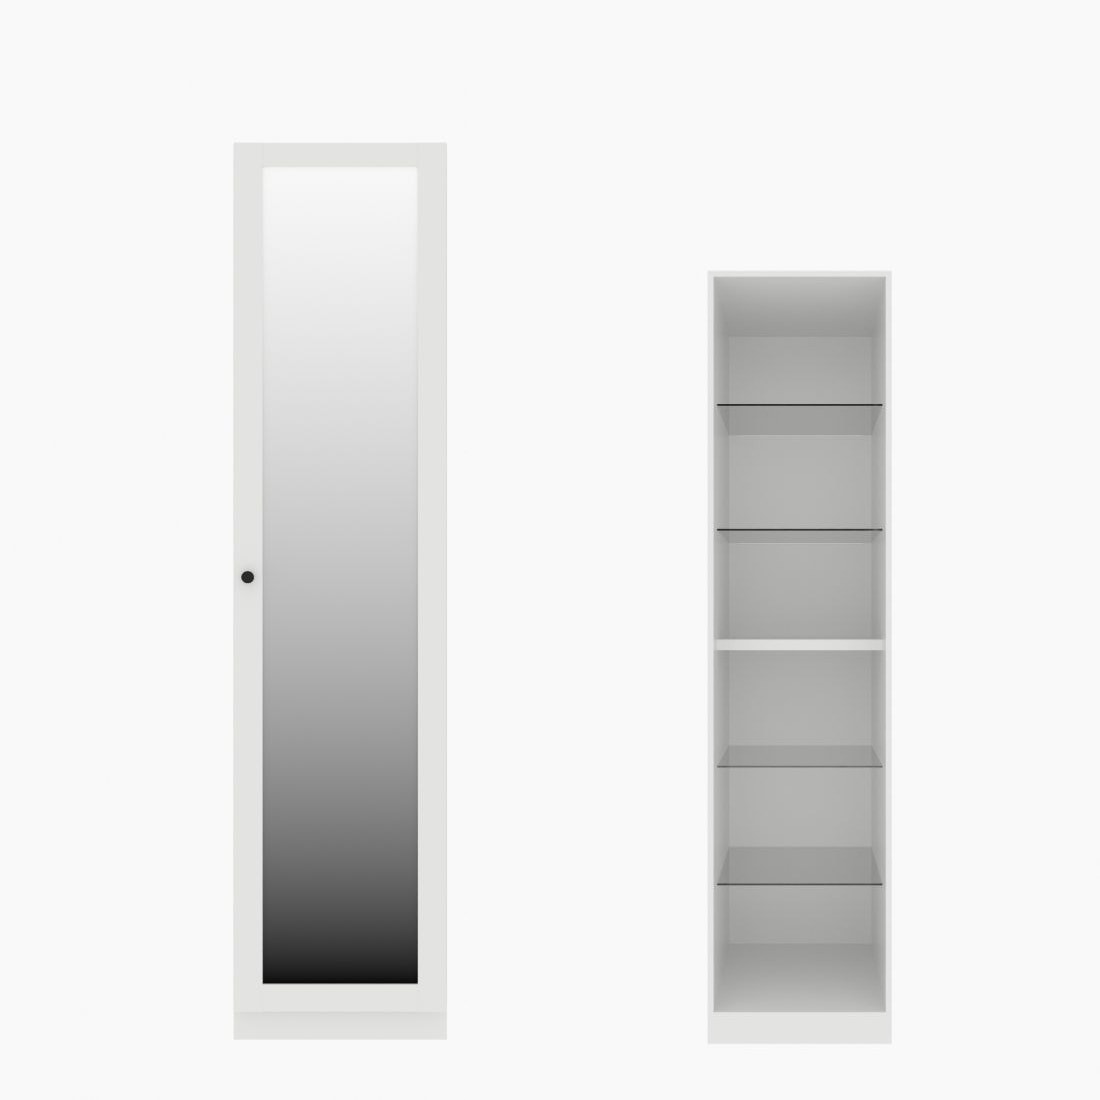 ตู้เสื้อผ้า ตู้โชว์ชั้นกระจก OP-H (หน้าบานเปิดขวา) ขนาด 50 ซม. รุ่น Blox สีขาว&กระจกเงา01